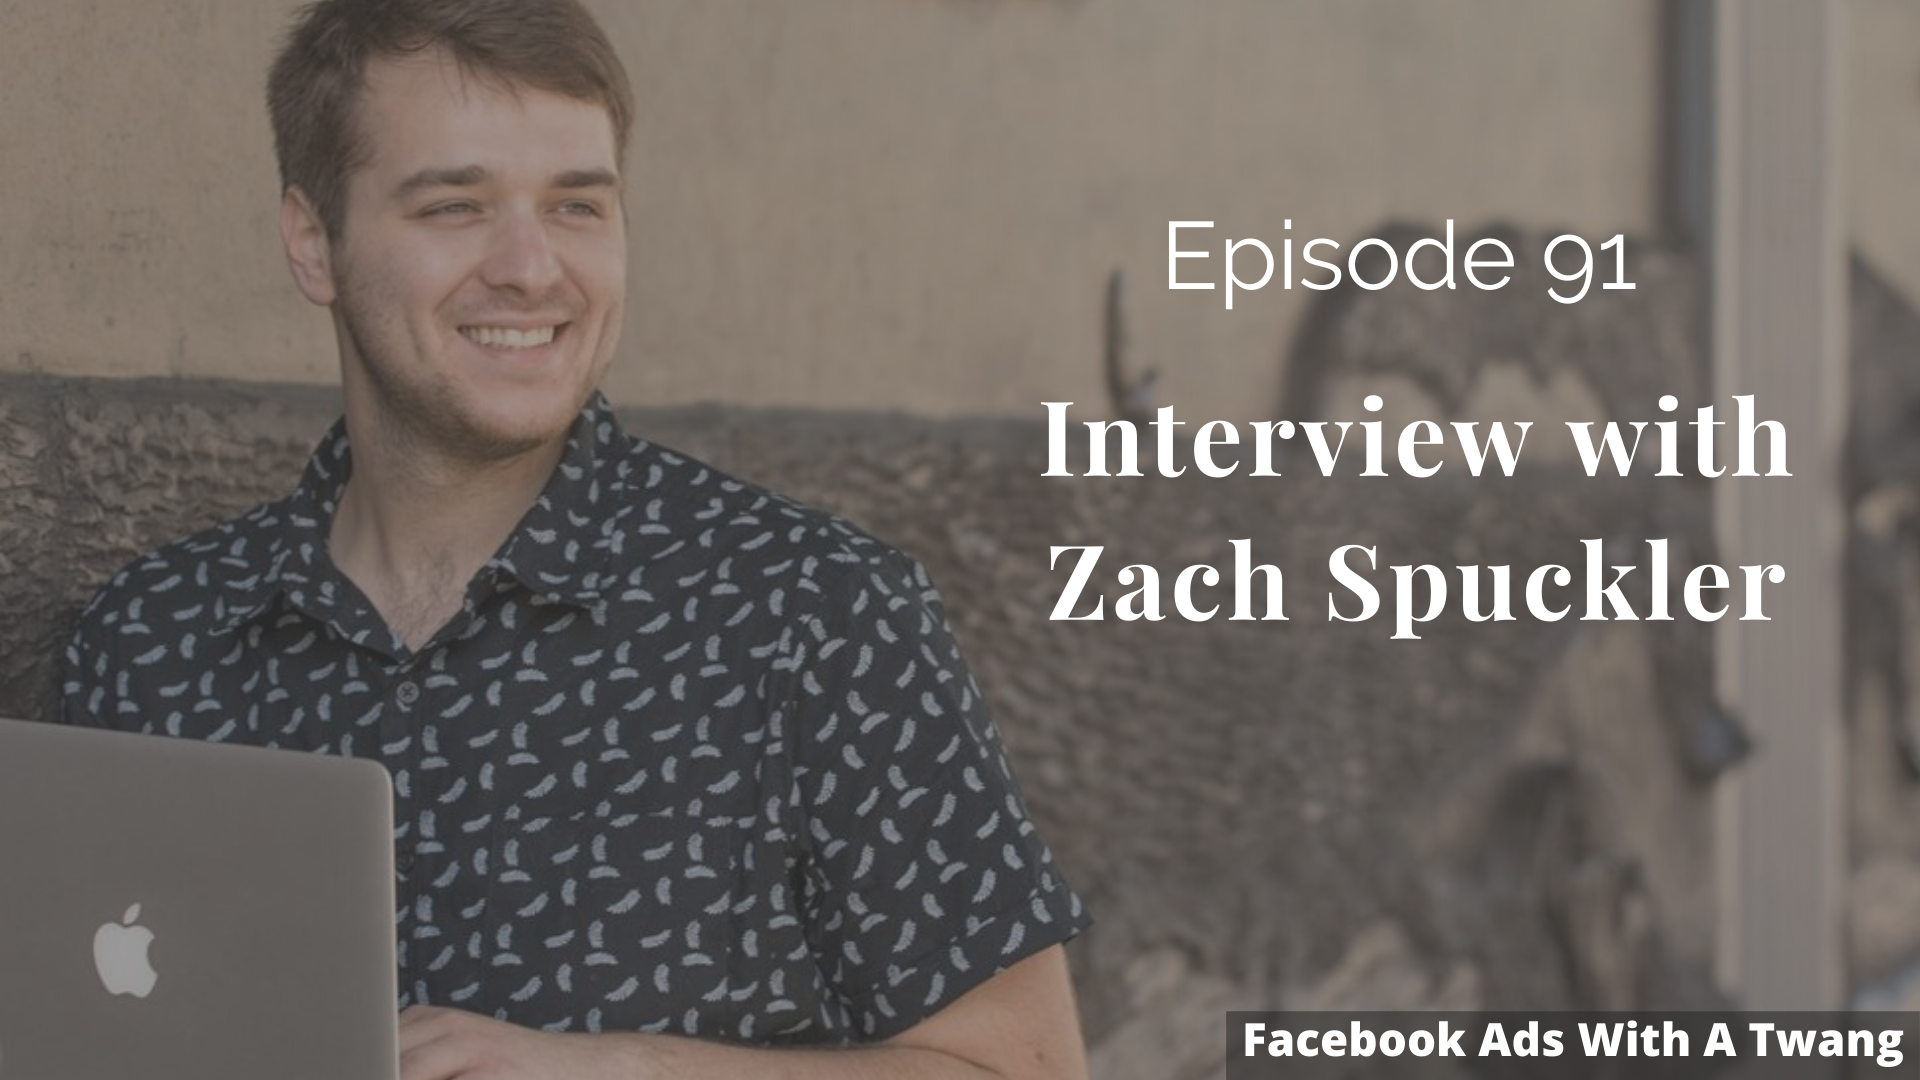 Interview with Master Facebook Ads Marketer Zach Spuckler